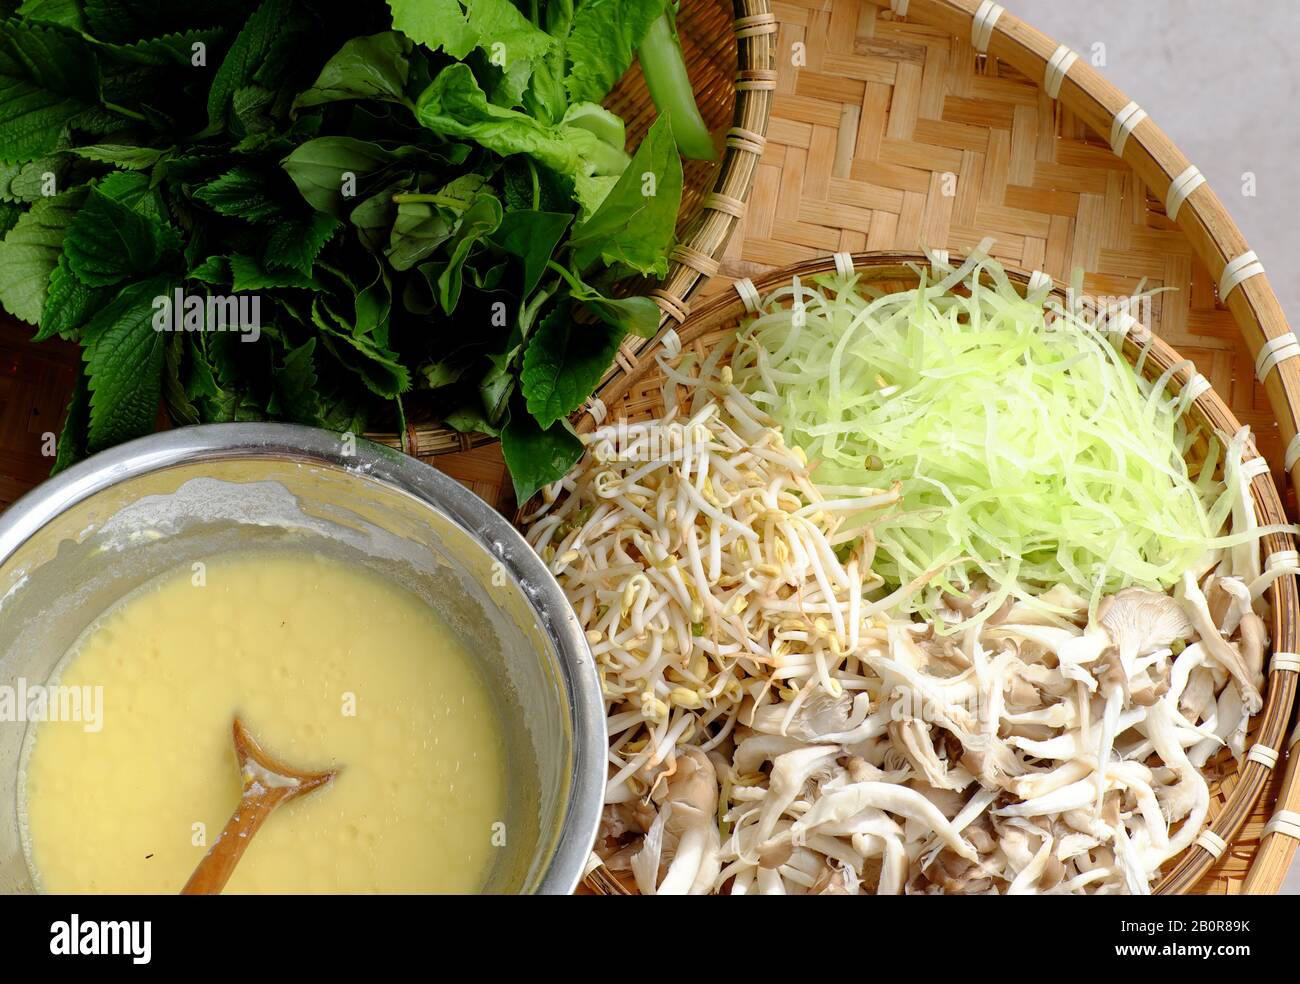 Cibo vietnamita per vegetariani, materia prima di frittelle vegane fatte in casa da farina di riso, roba con chayote tritato, funghi abalone, germogli Foto Stock